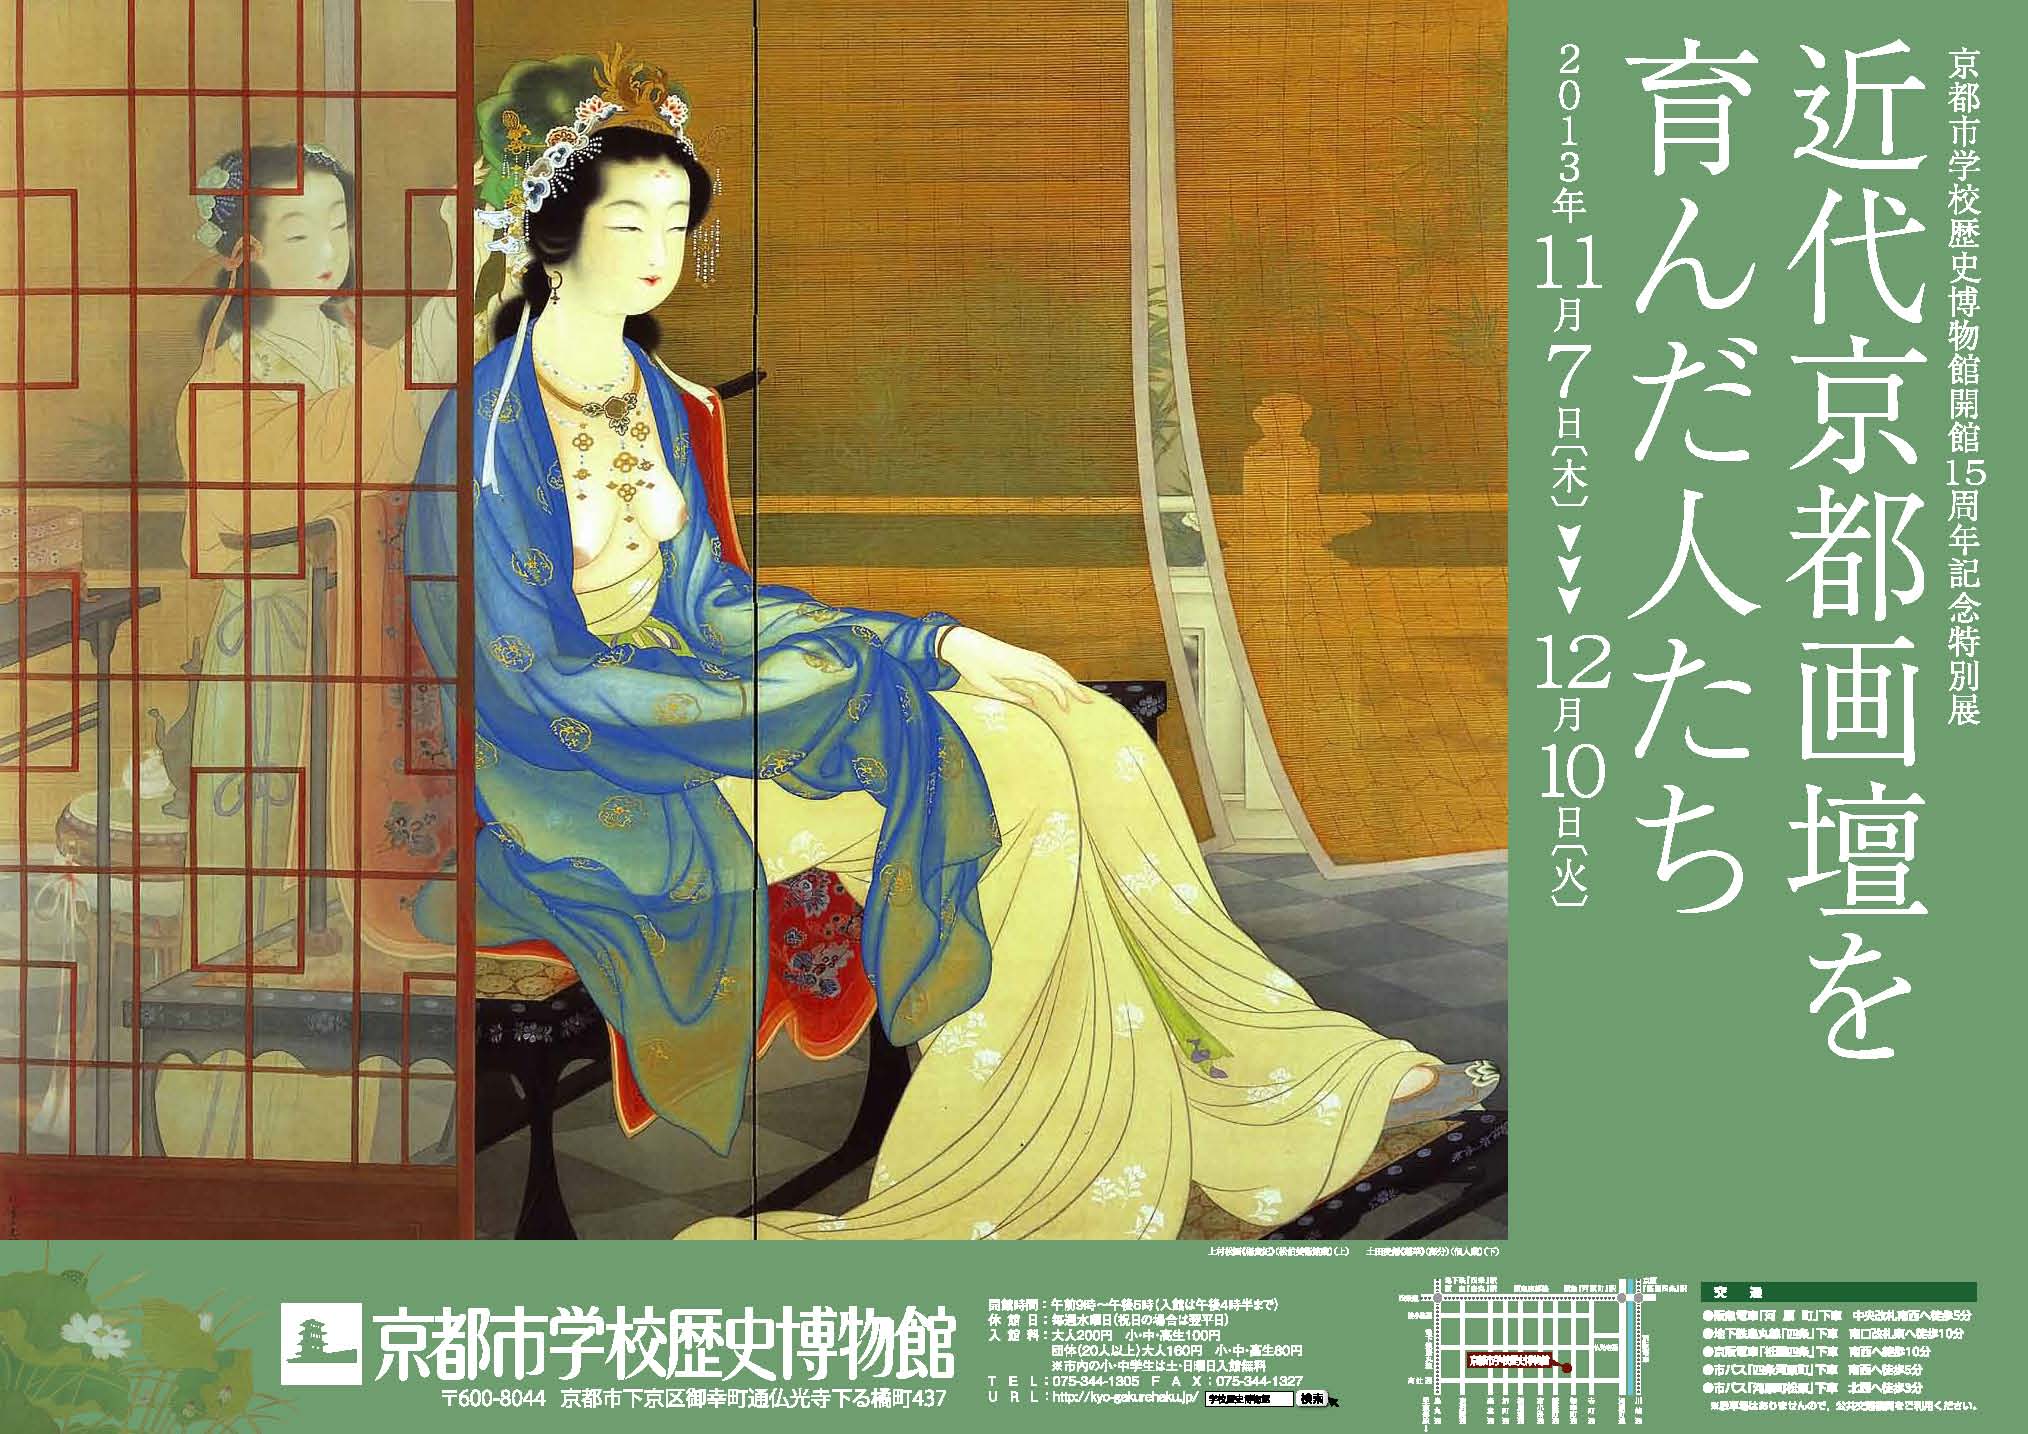 土田麦僊と若手日本画家サークル 20世紀初頭の日本画